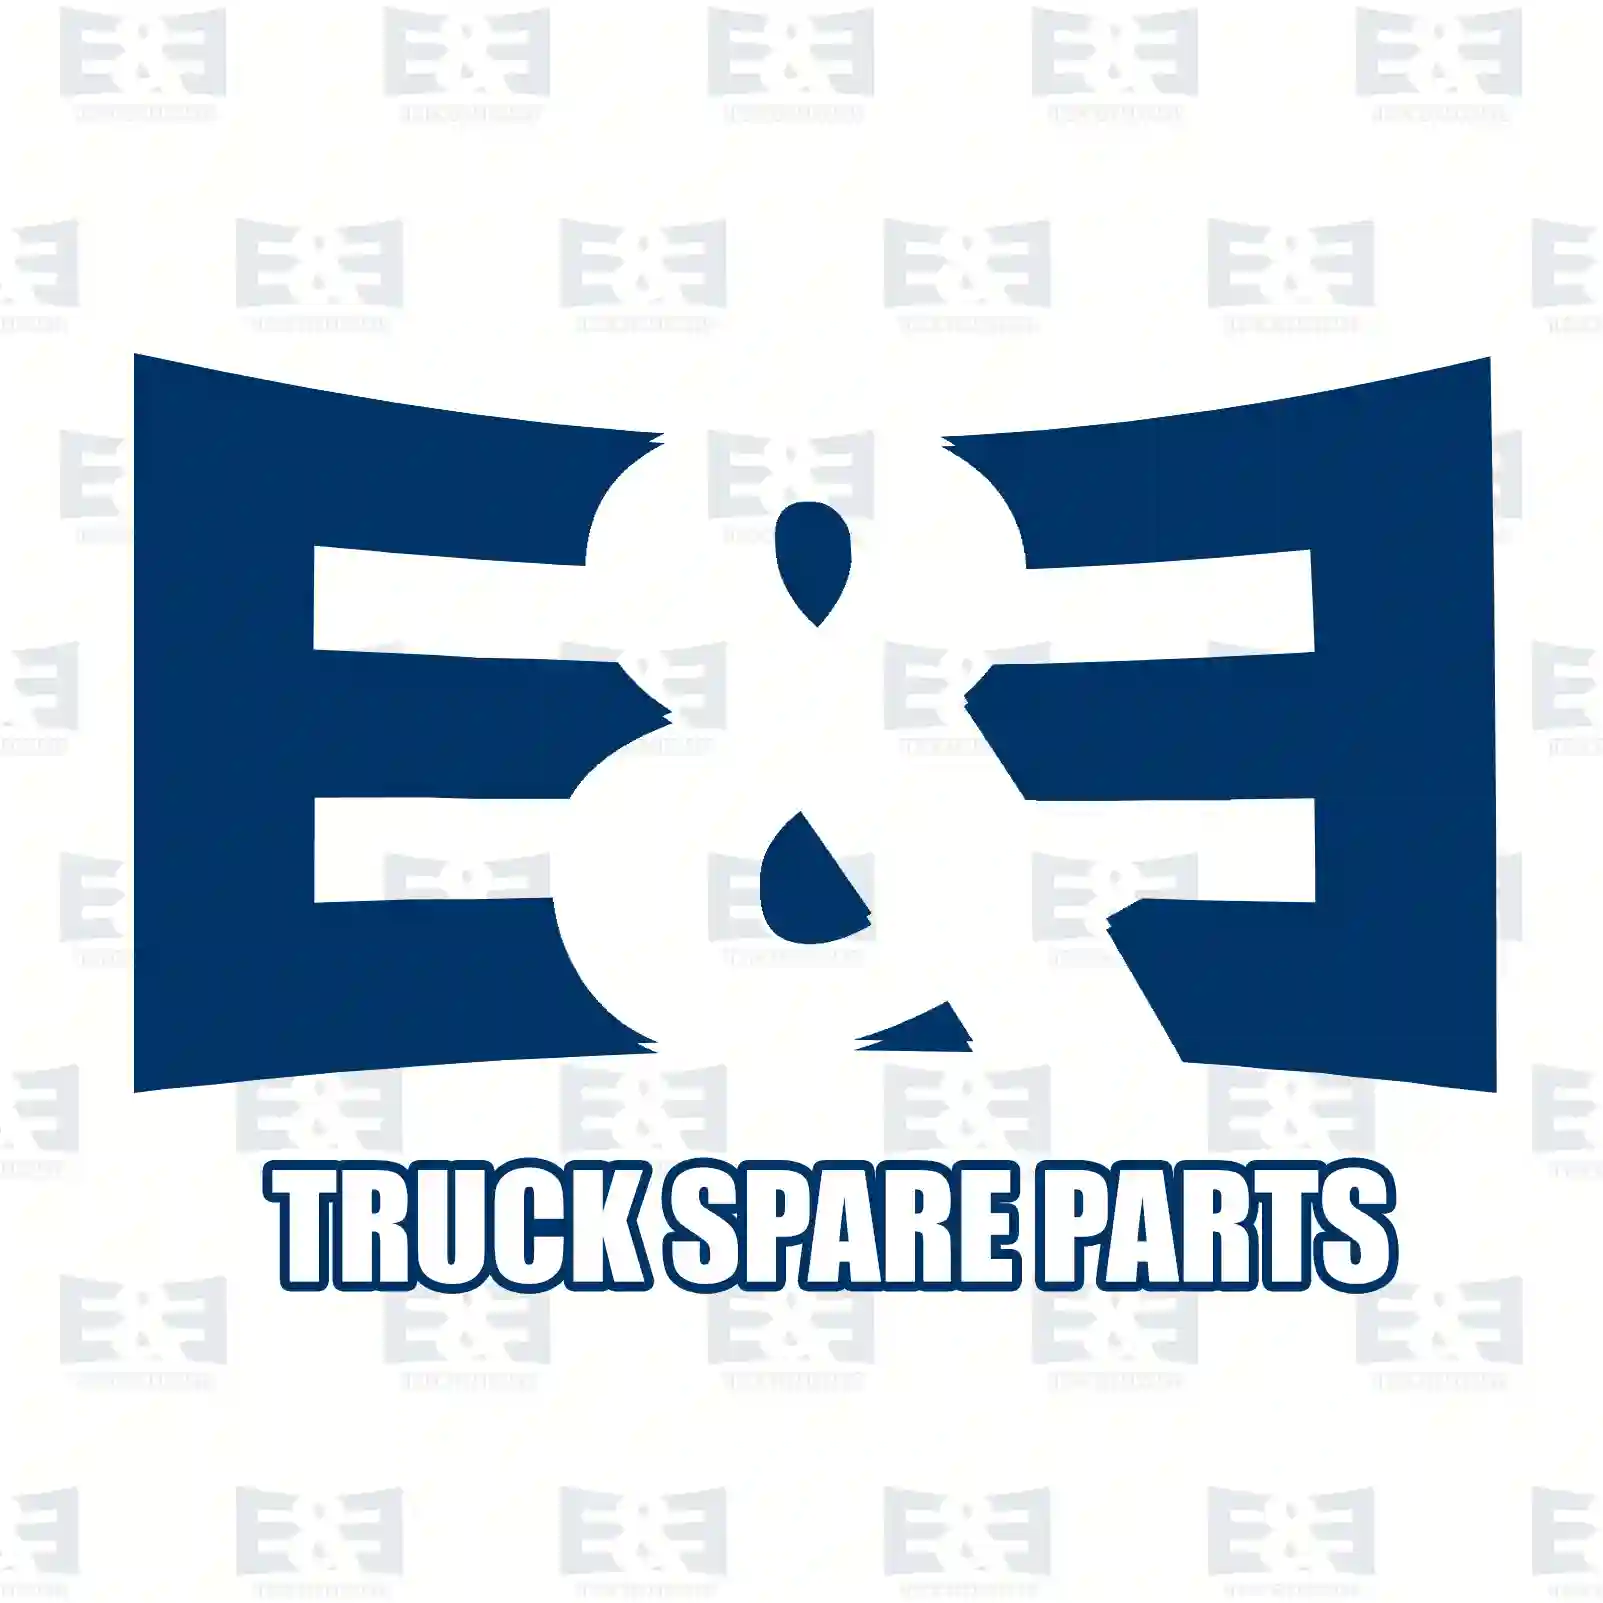 Screw, 2E2285763, 9,10E+11 ||  2E2285763 E&E Truck Spare Parts | Truck Spare Parts, Auotomotive Spare Parts Screw, 2E2285763, 9,10E+11 ||  2E2285763 E&E Truck Spare Parts | Truck Spare Parts, Auotomotive Spare Parts